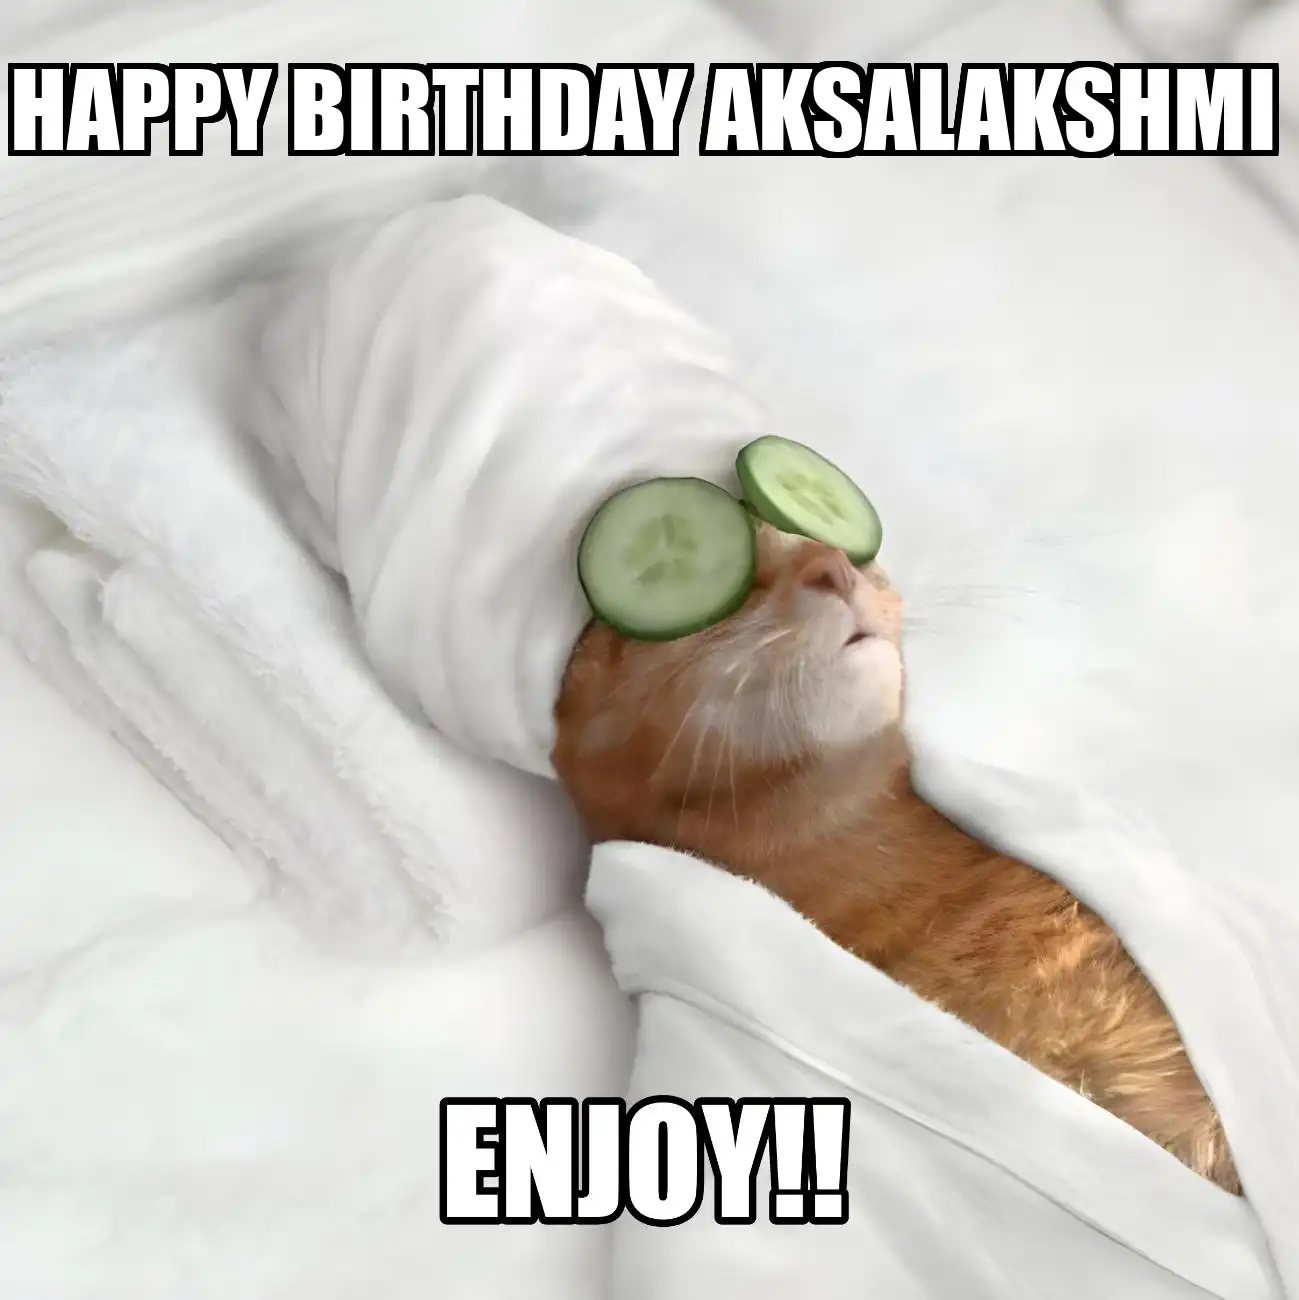 Happy Birthday Aksalakshmi Enjoy Cat Meme